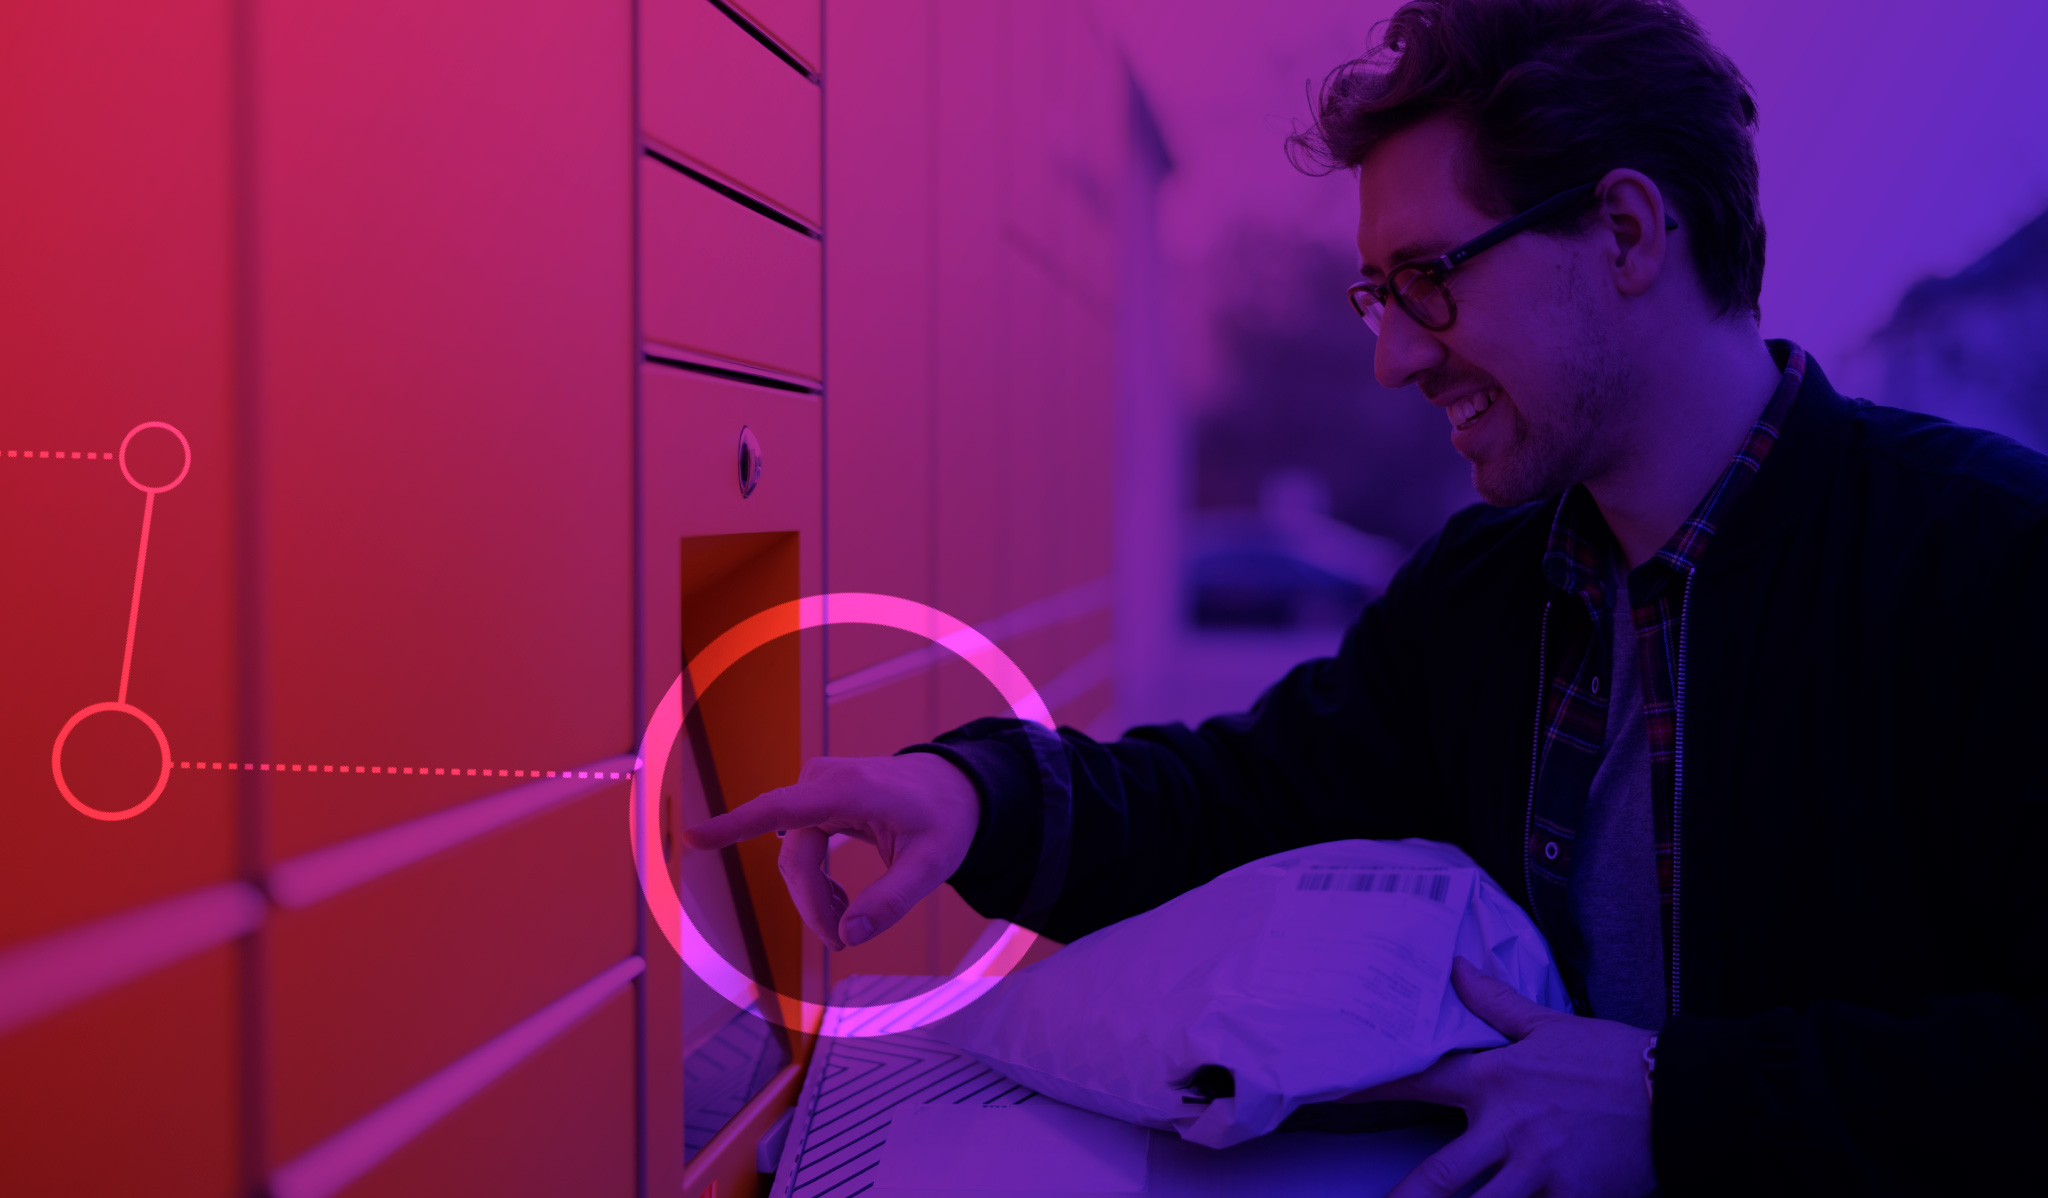 Imagem de um homem usando óculos mexendo um um dispositivo na parede, que parece ser um locker (armário). Ele segura uma caixa de papelão e uma sacola plástica.